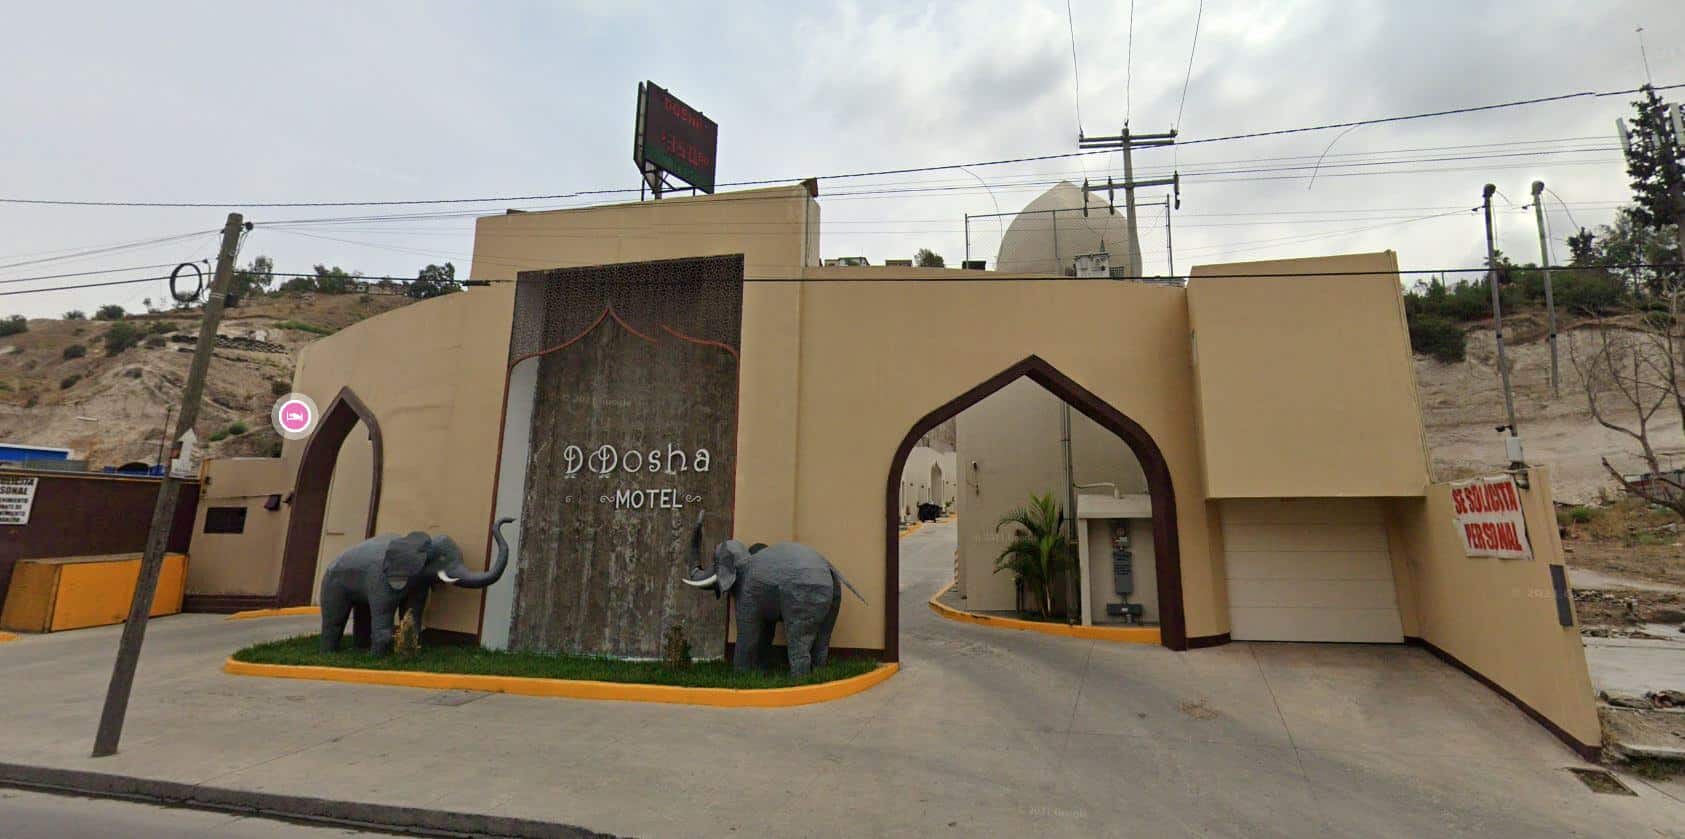 Moteles en Tijuana Motel Dosha